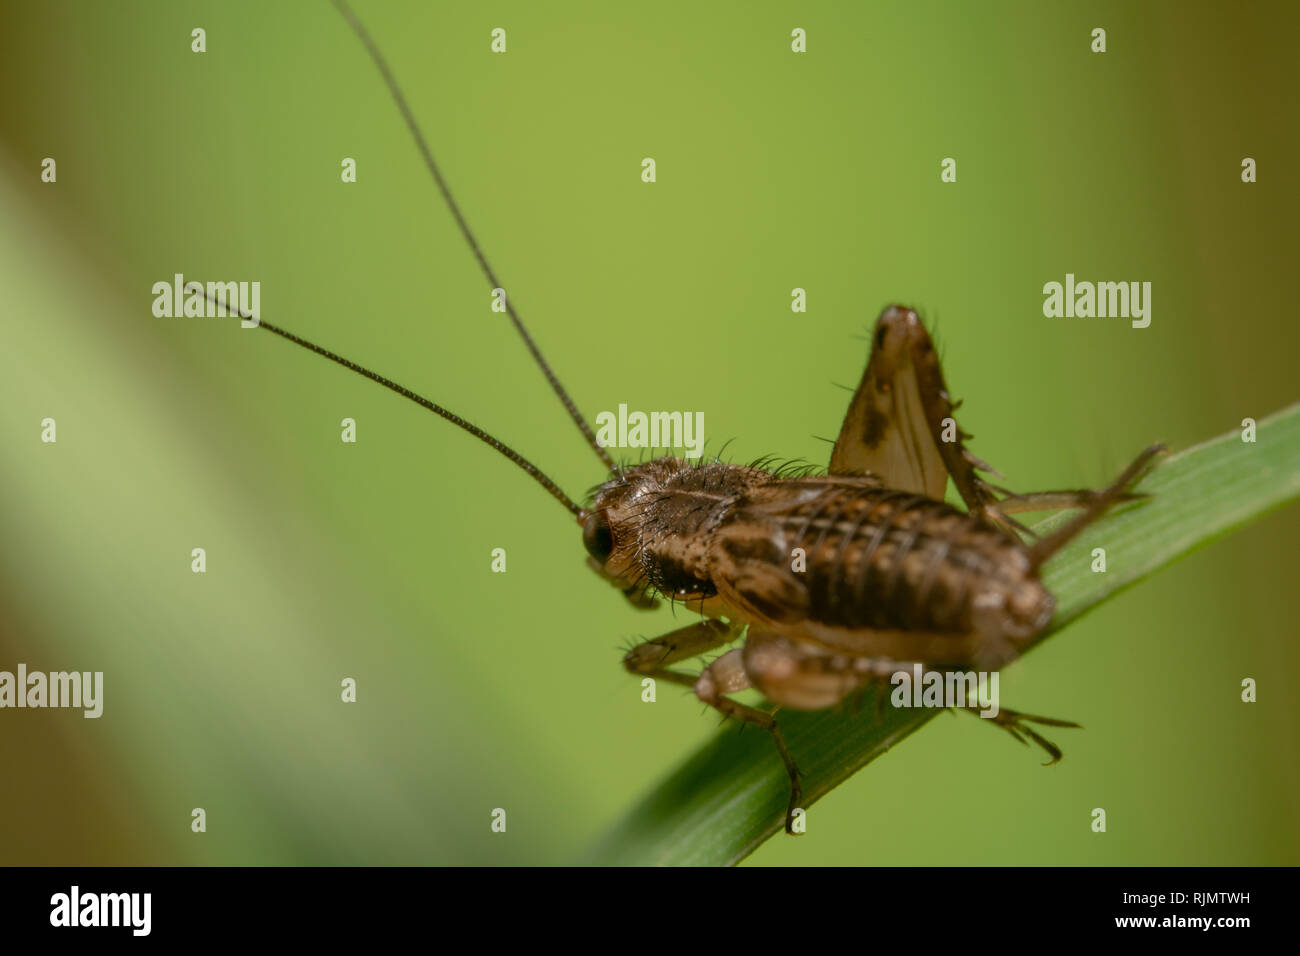 Wingless brown grasshopper seduto su una foglia verde con sfondo verde shot dal retro con le sue antenne verso l'alto Foto Stock